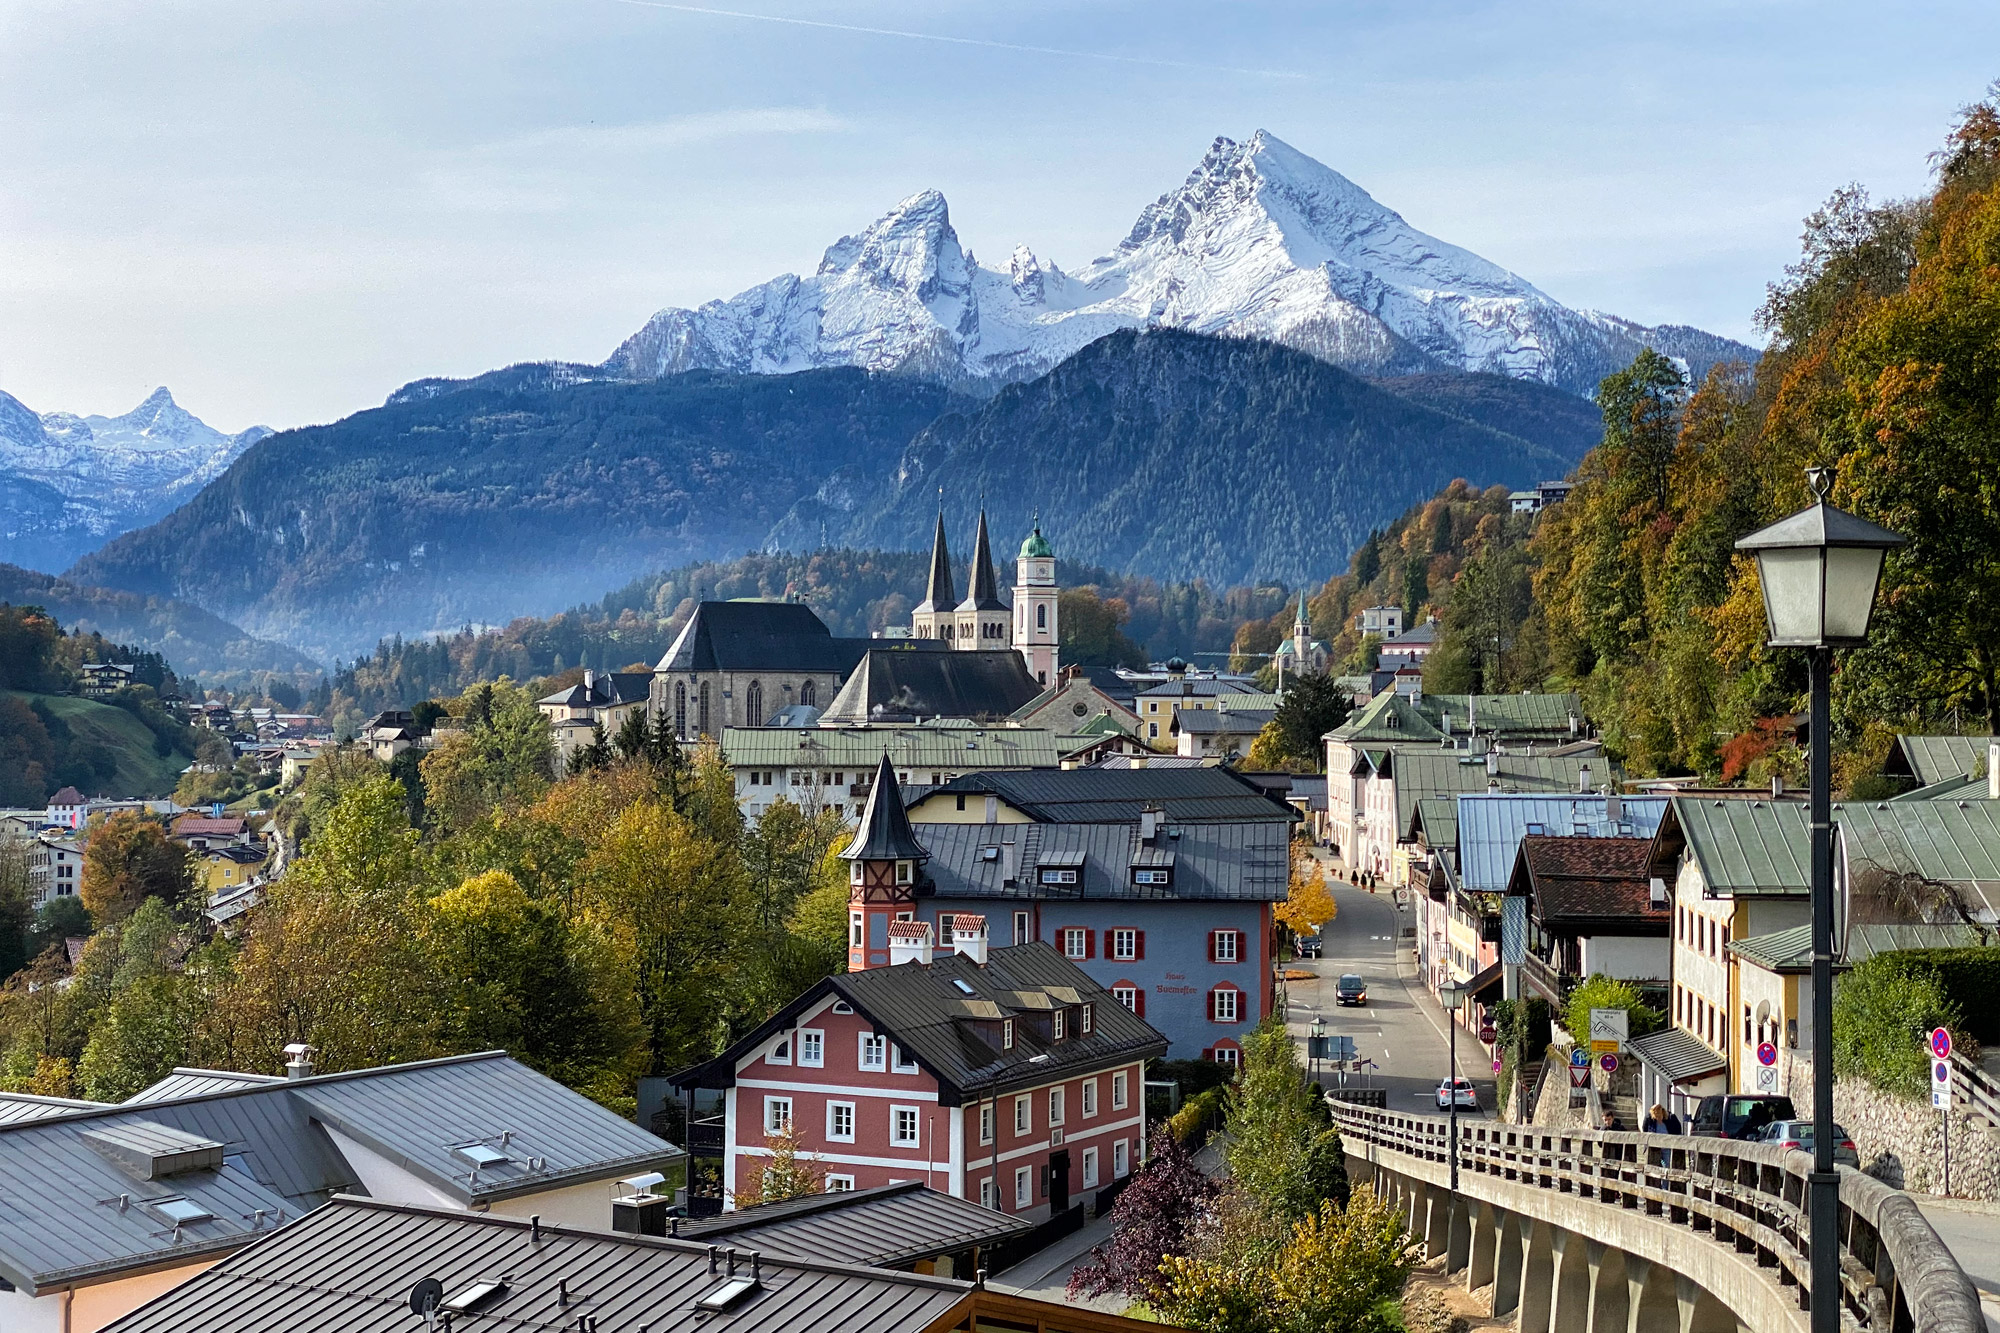 Foto van de maand Oktober 2020 - Berchtesgaden